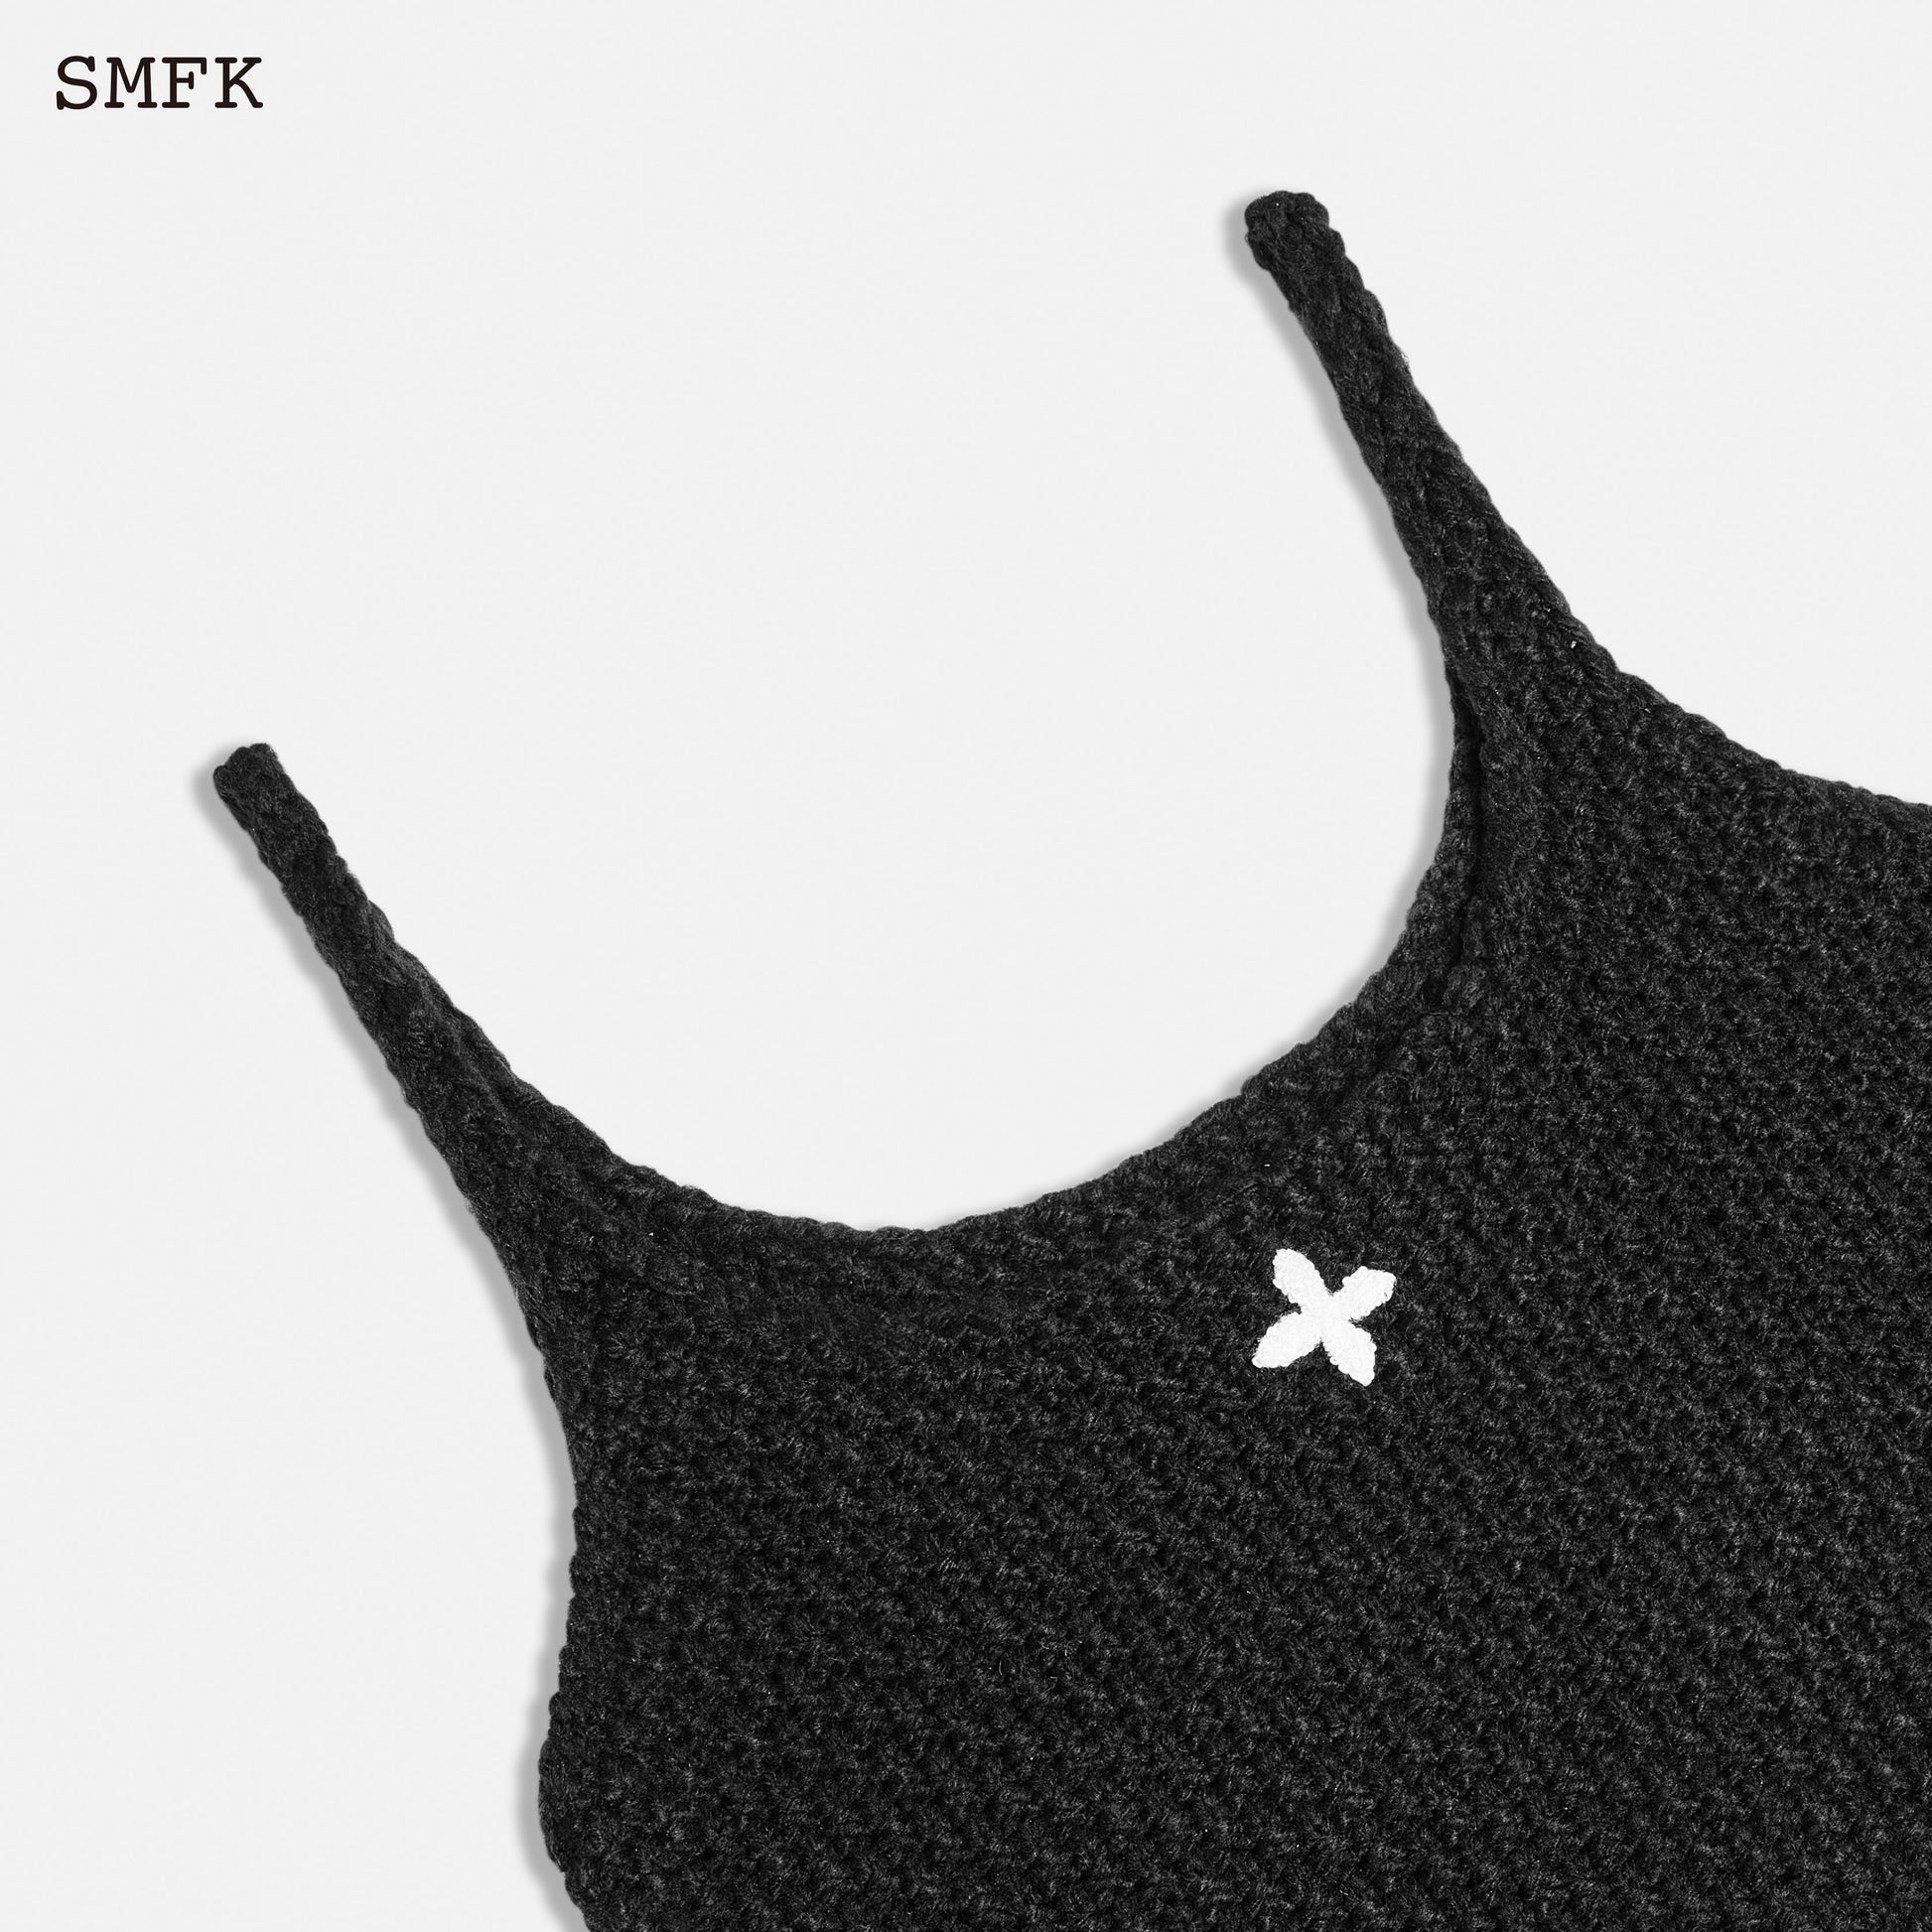 SMFK Mermaid Wool Knit Vest Midnight Black - Fixxshop